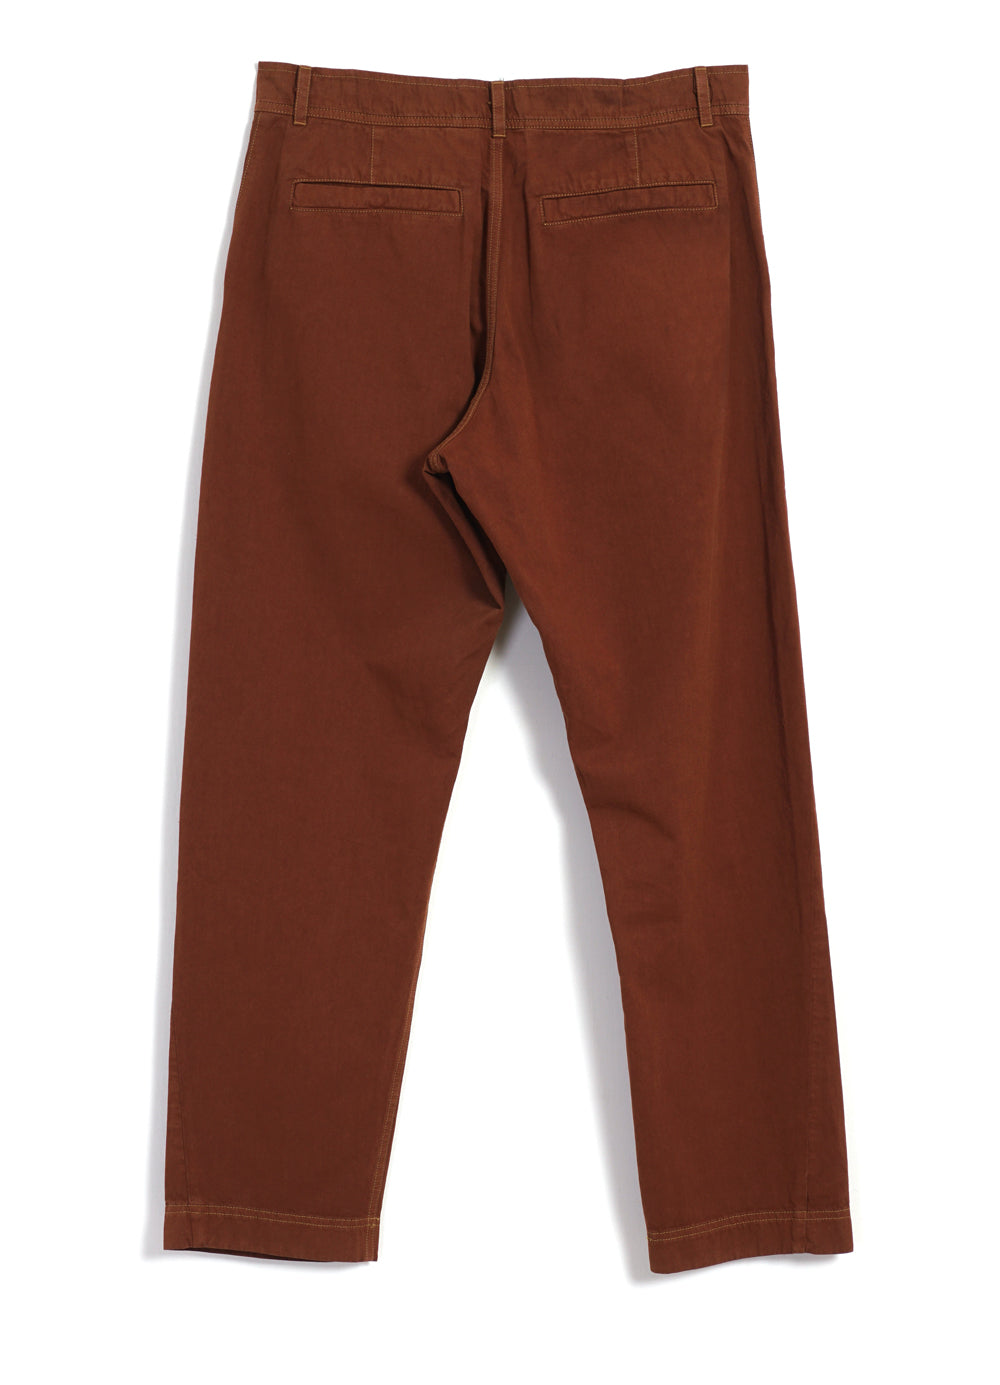 stabil screech Maleri TYGE | Wide Cut Cropped Trousers | Brick | HANSEN Garments